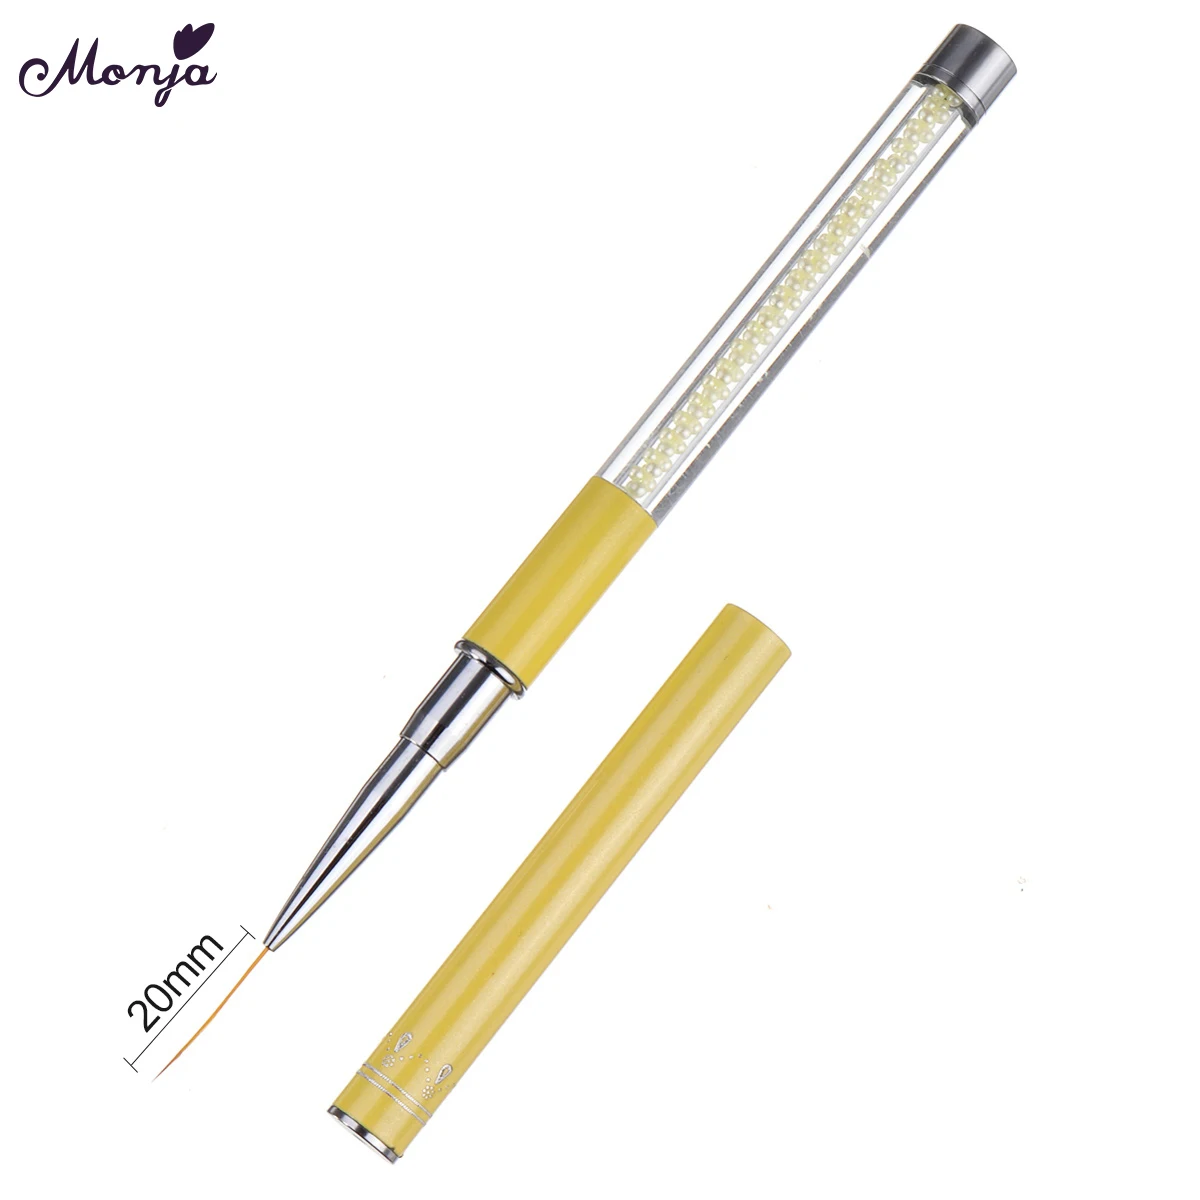 Monja дизайн ногтей скраб жемчуг стразы ручка живопись из линий кисти цветок полосы лайнер DIY дизайн ручка для рисования инструмент для маникюра